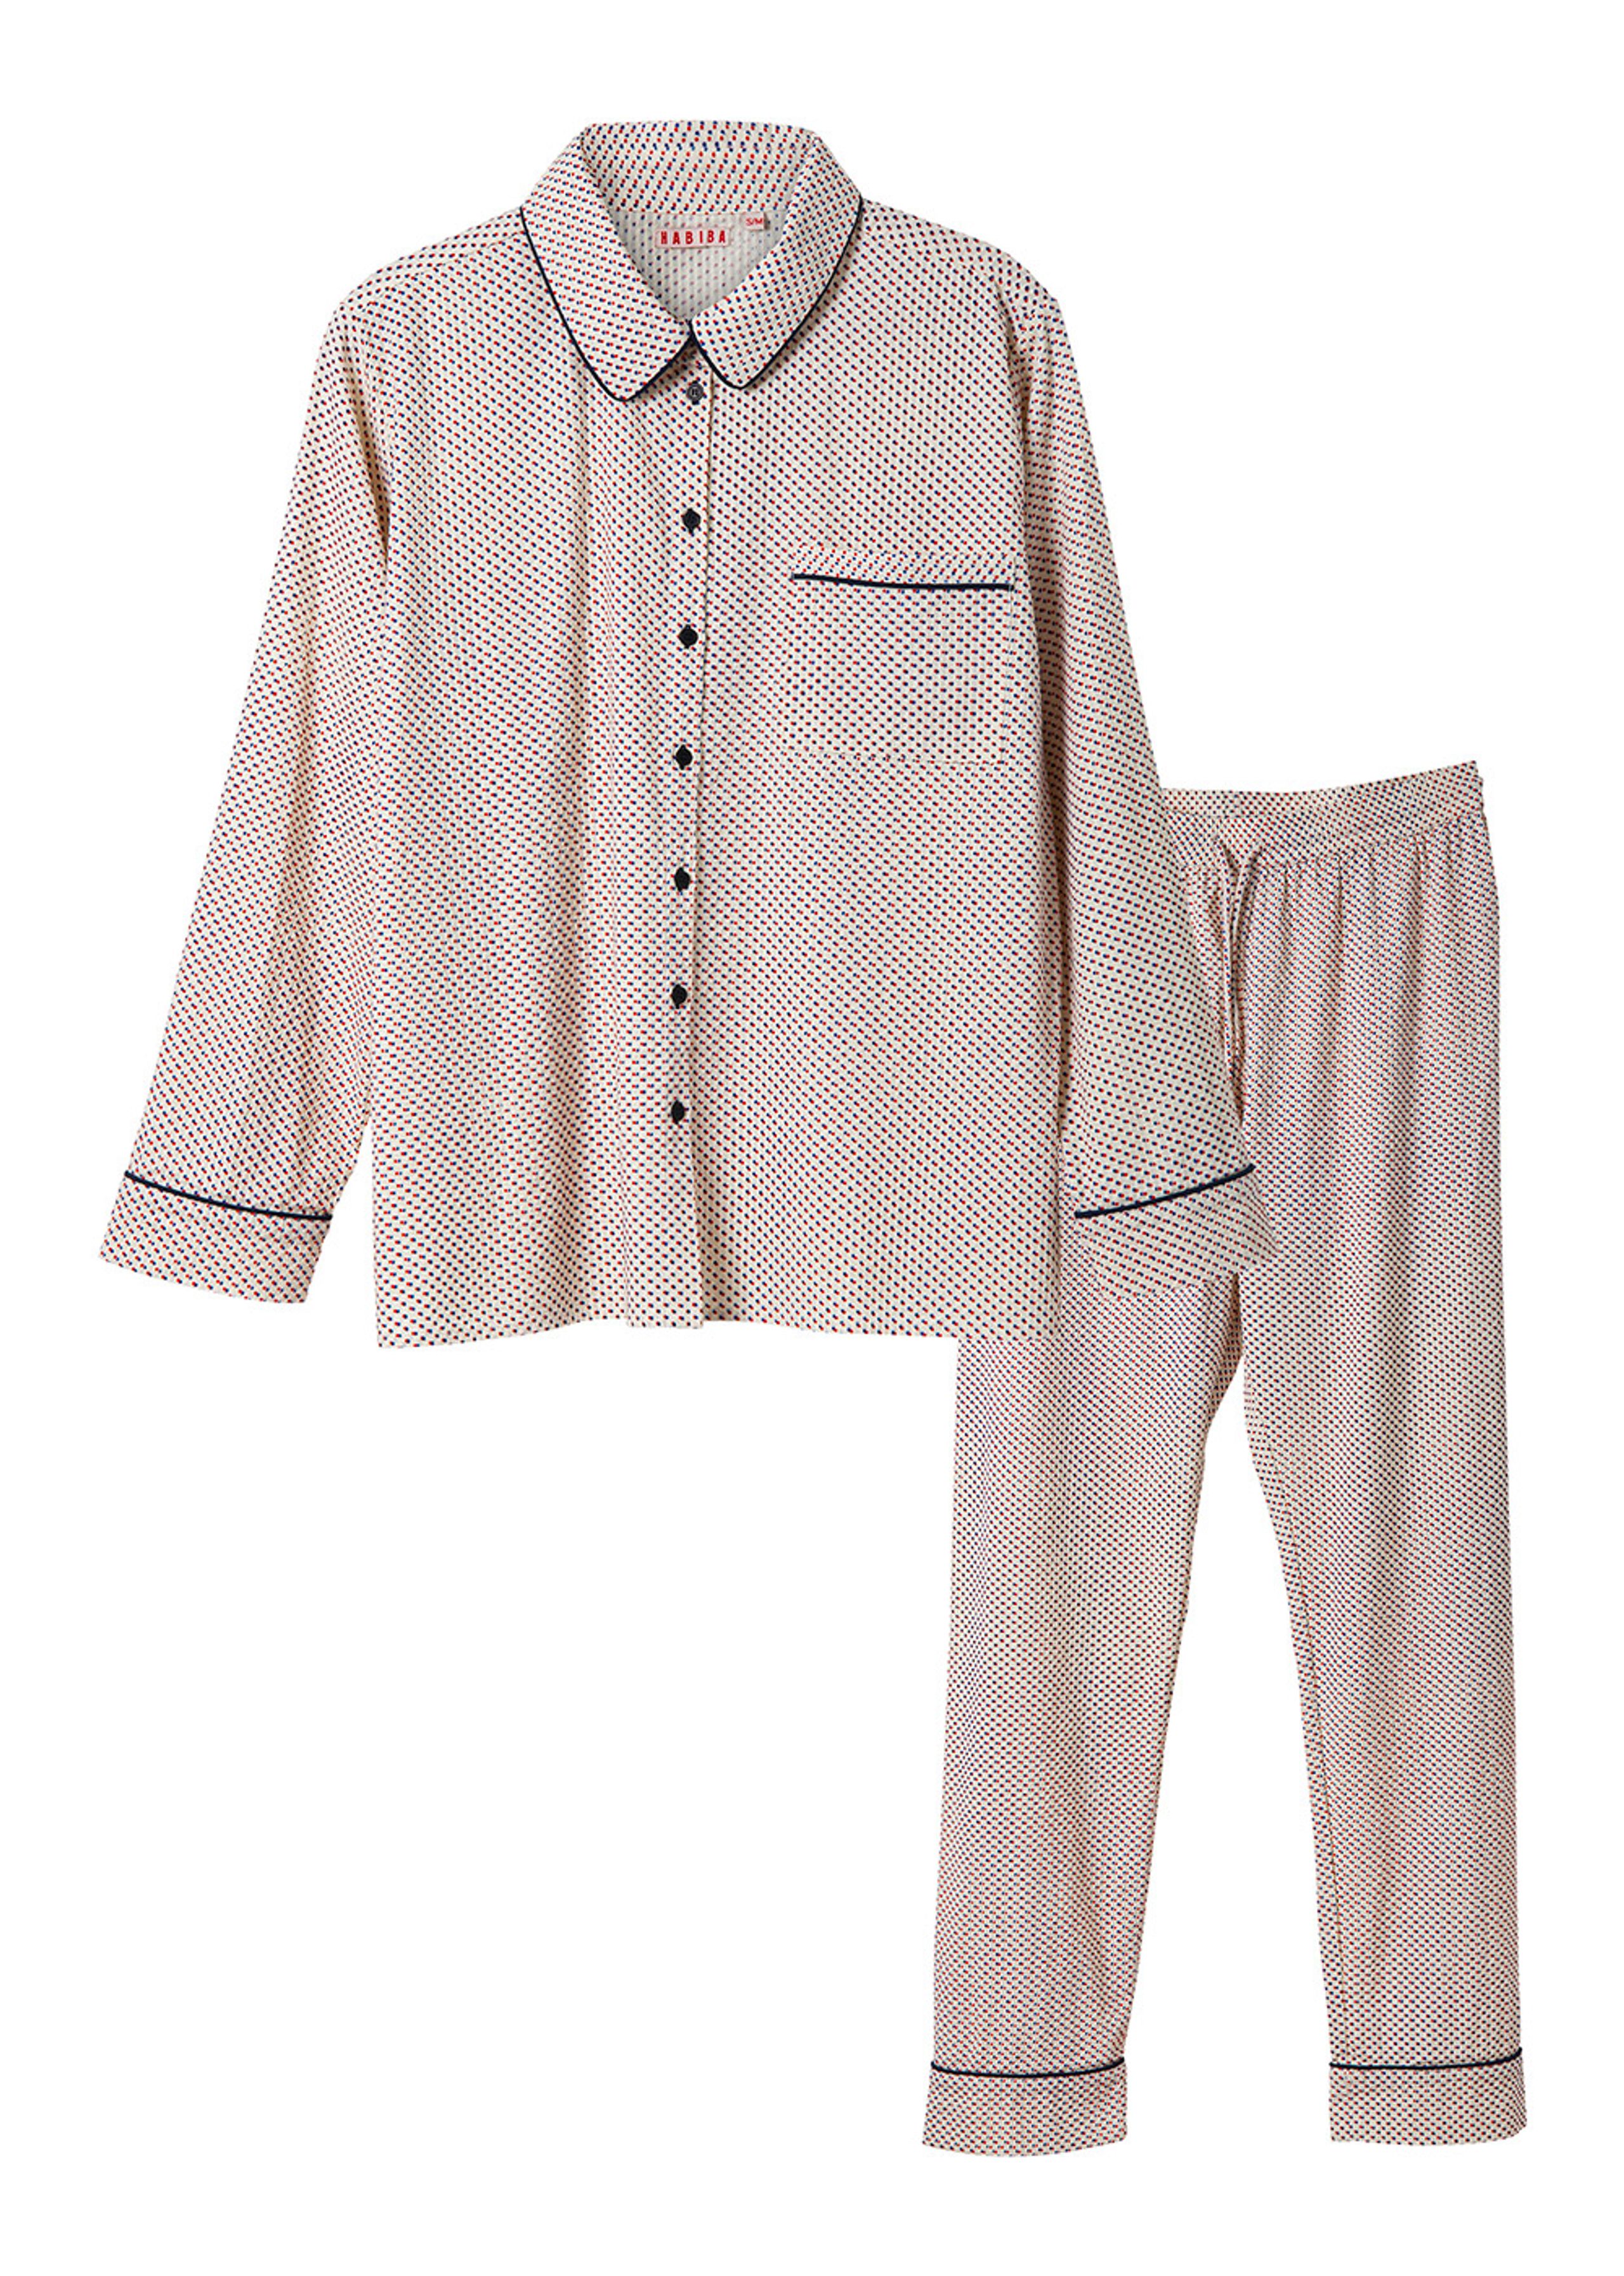 HABIBA - Pijamas - Dotty Seersucker Pyjamas Set - Ivory